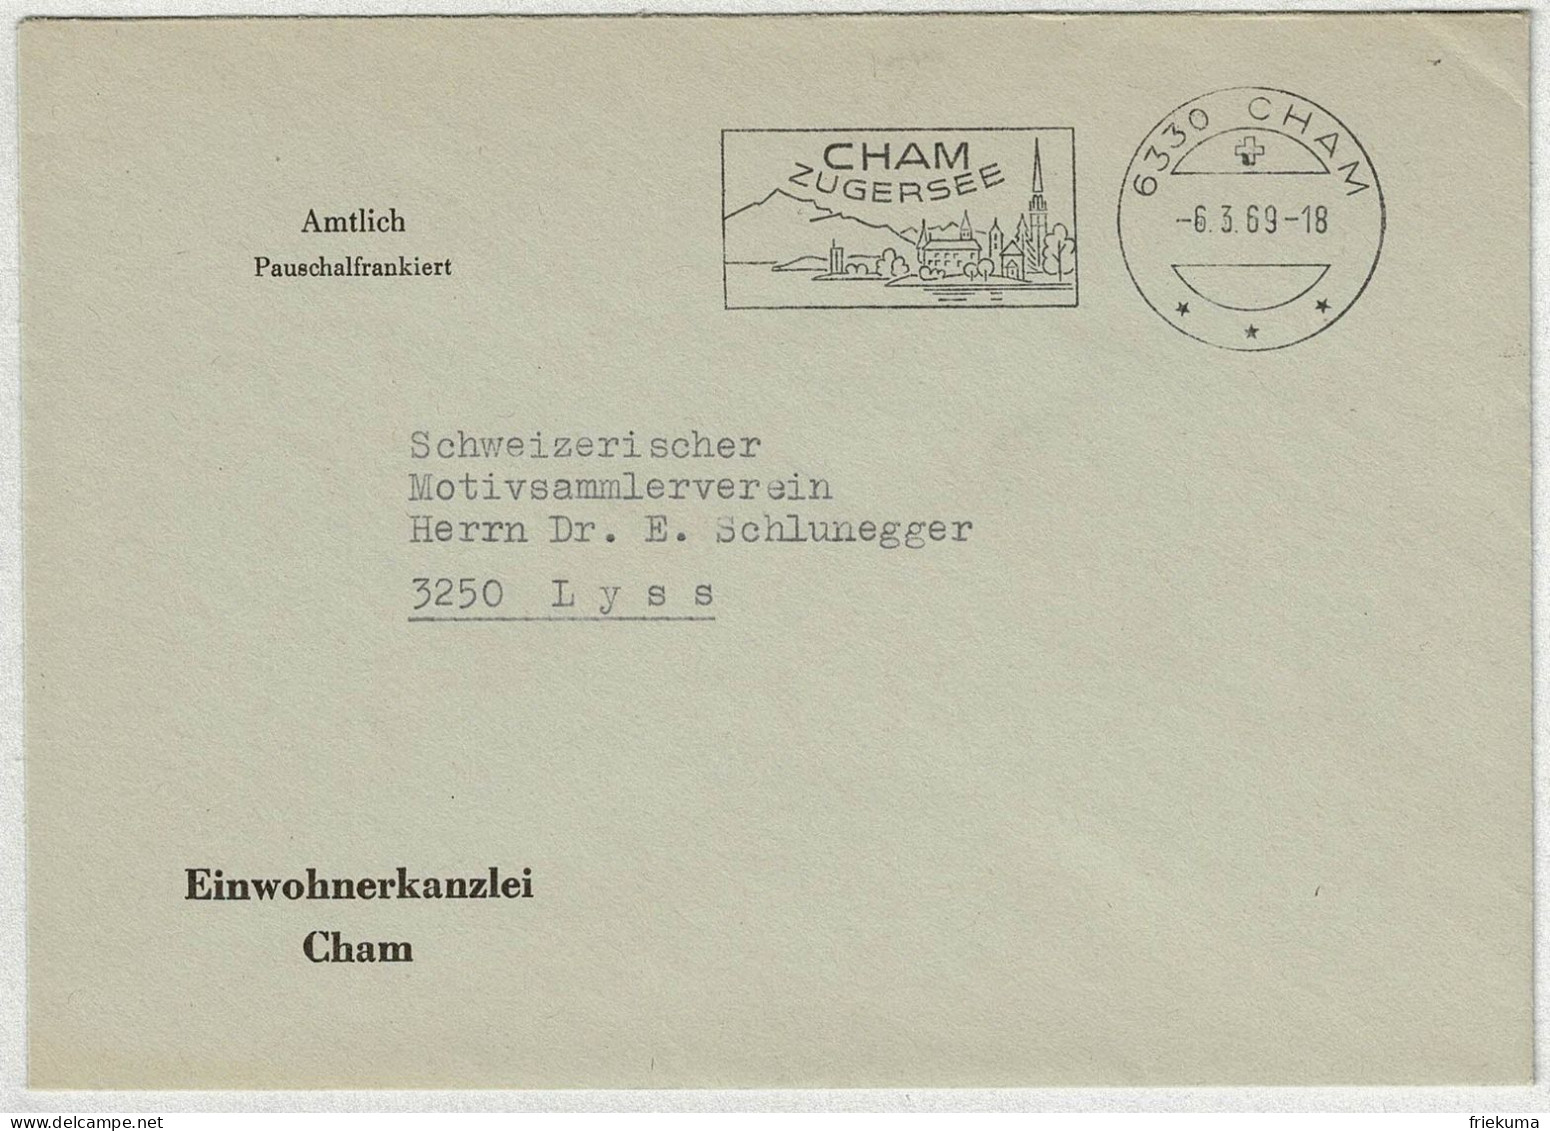 Schweiz 1969, Brief Amtlich Pauschalfrankiert Cham - Lyss - Marcofilie